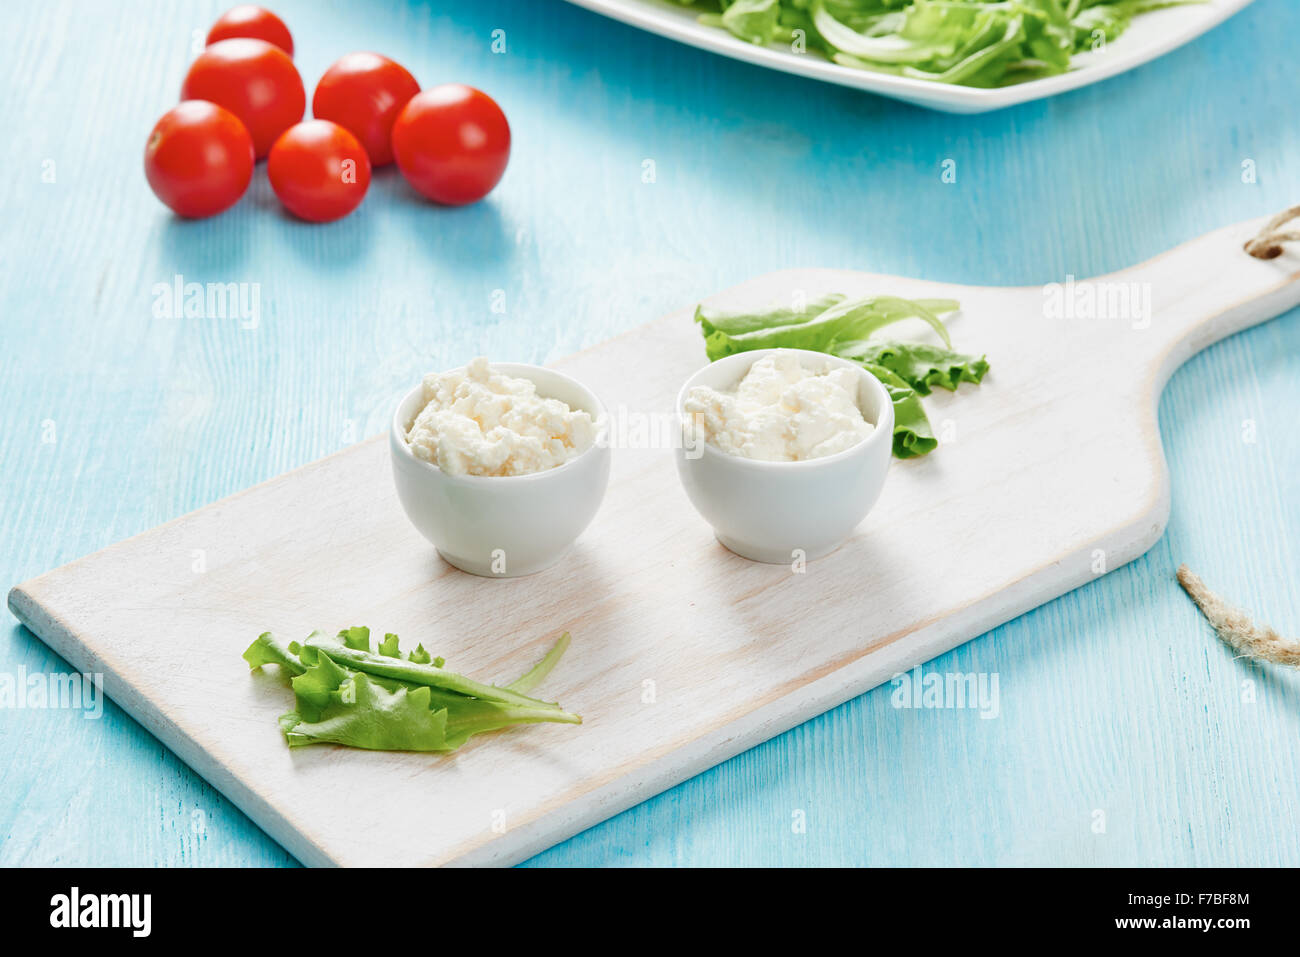 Le fromage cottage dans deux bols blanc sur bleu table en bois, salade et tomate Banque D'Images